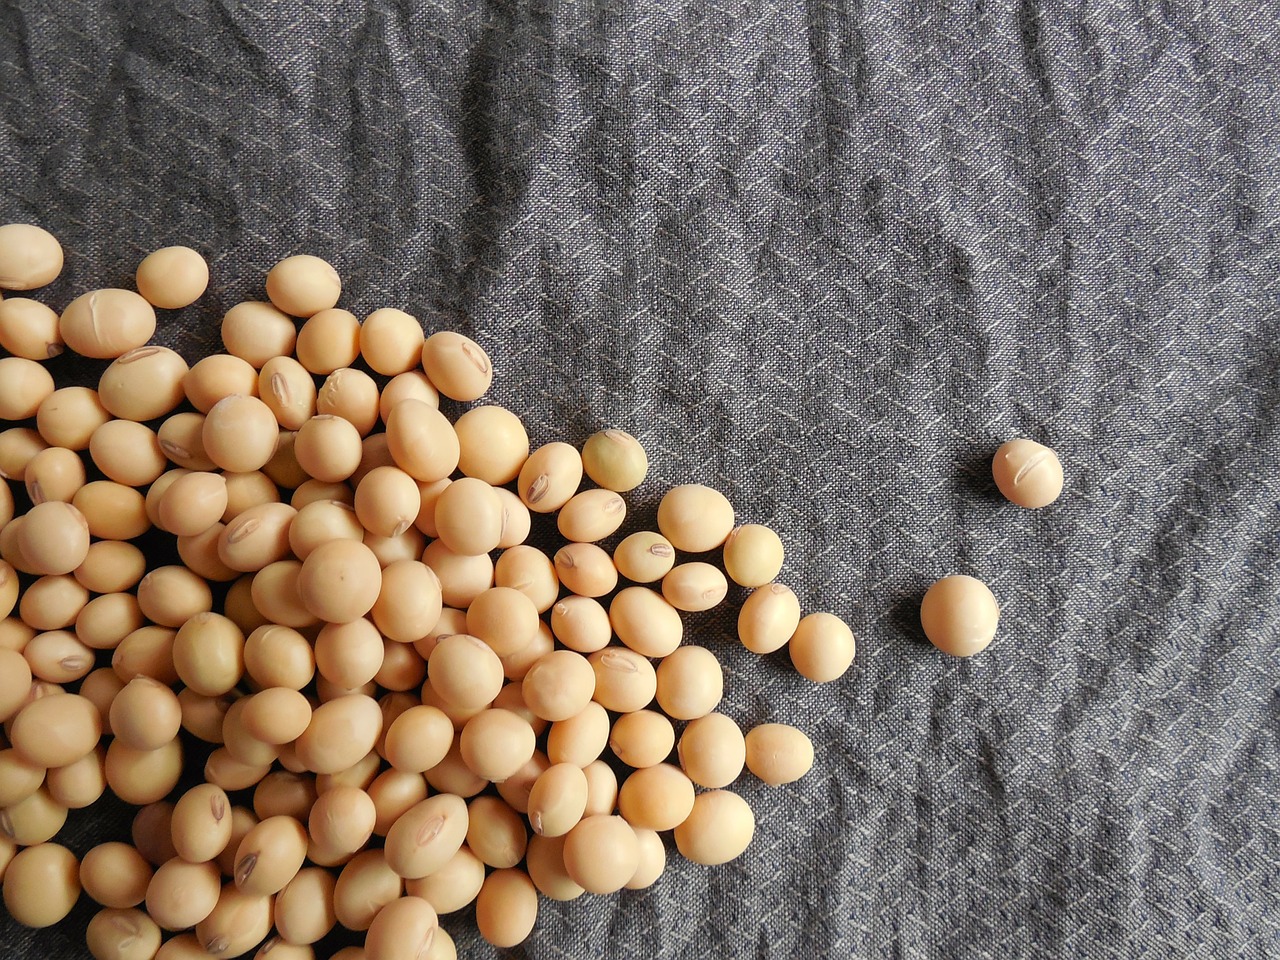 soybeans-182294_1280.jpg